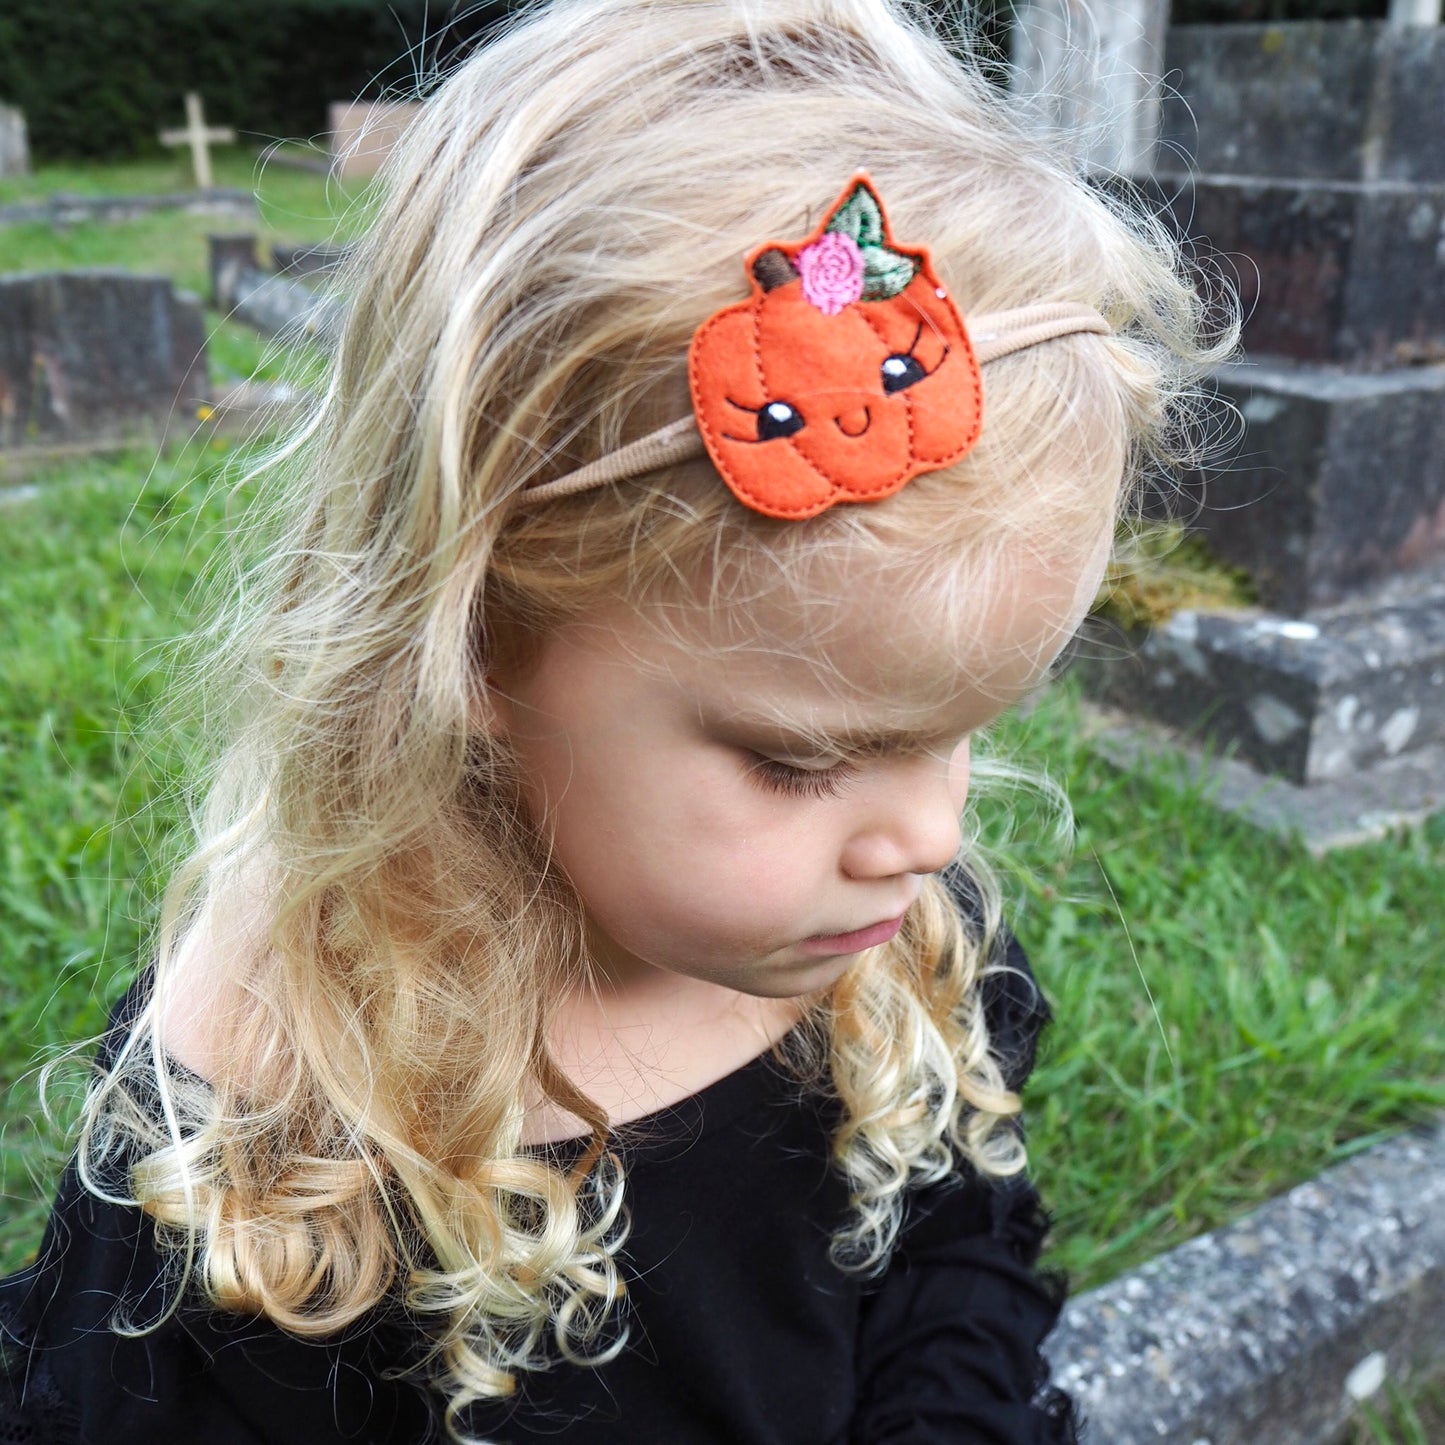 Little Miss Pumpkin